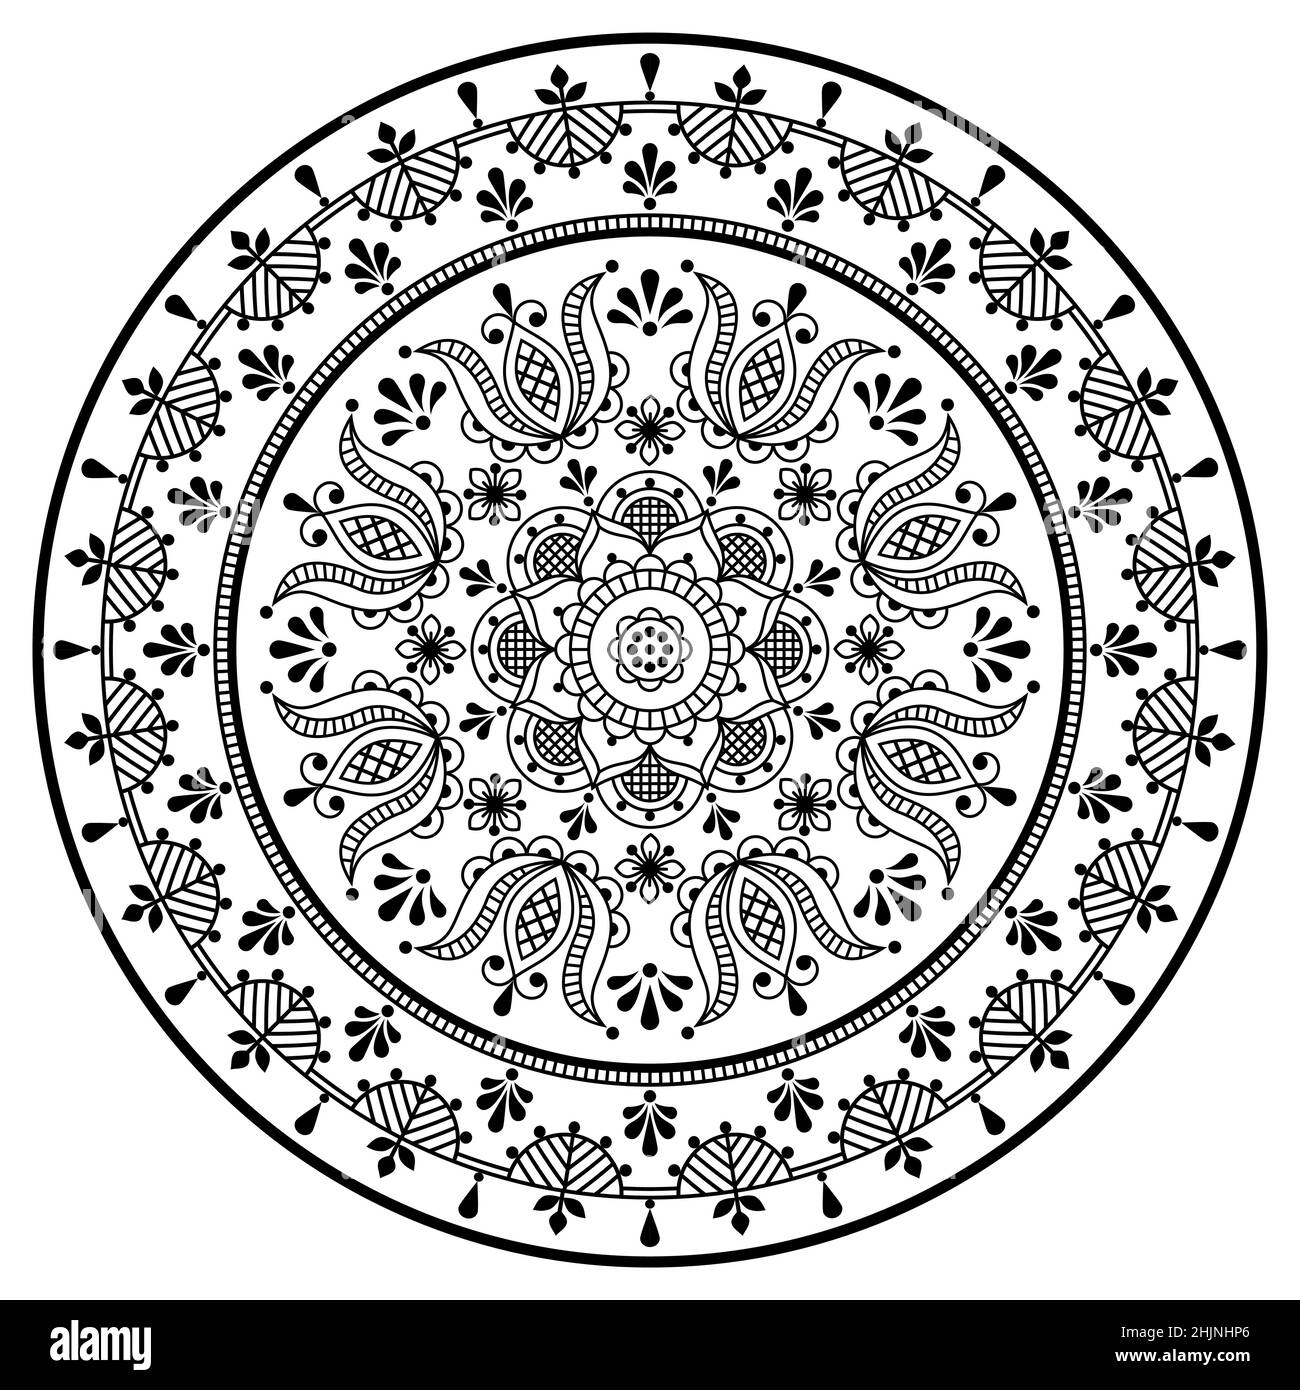 Scandinave floral mandala vector broderie folk art style - Nordic contour rond motif avec fleurs et feuilles en noir sur blanc Illustration de Vecteur